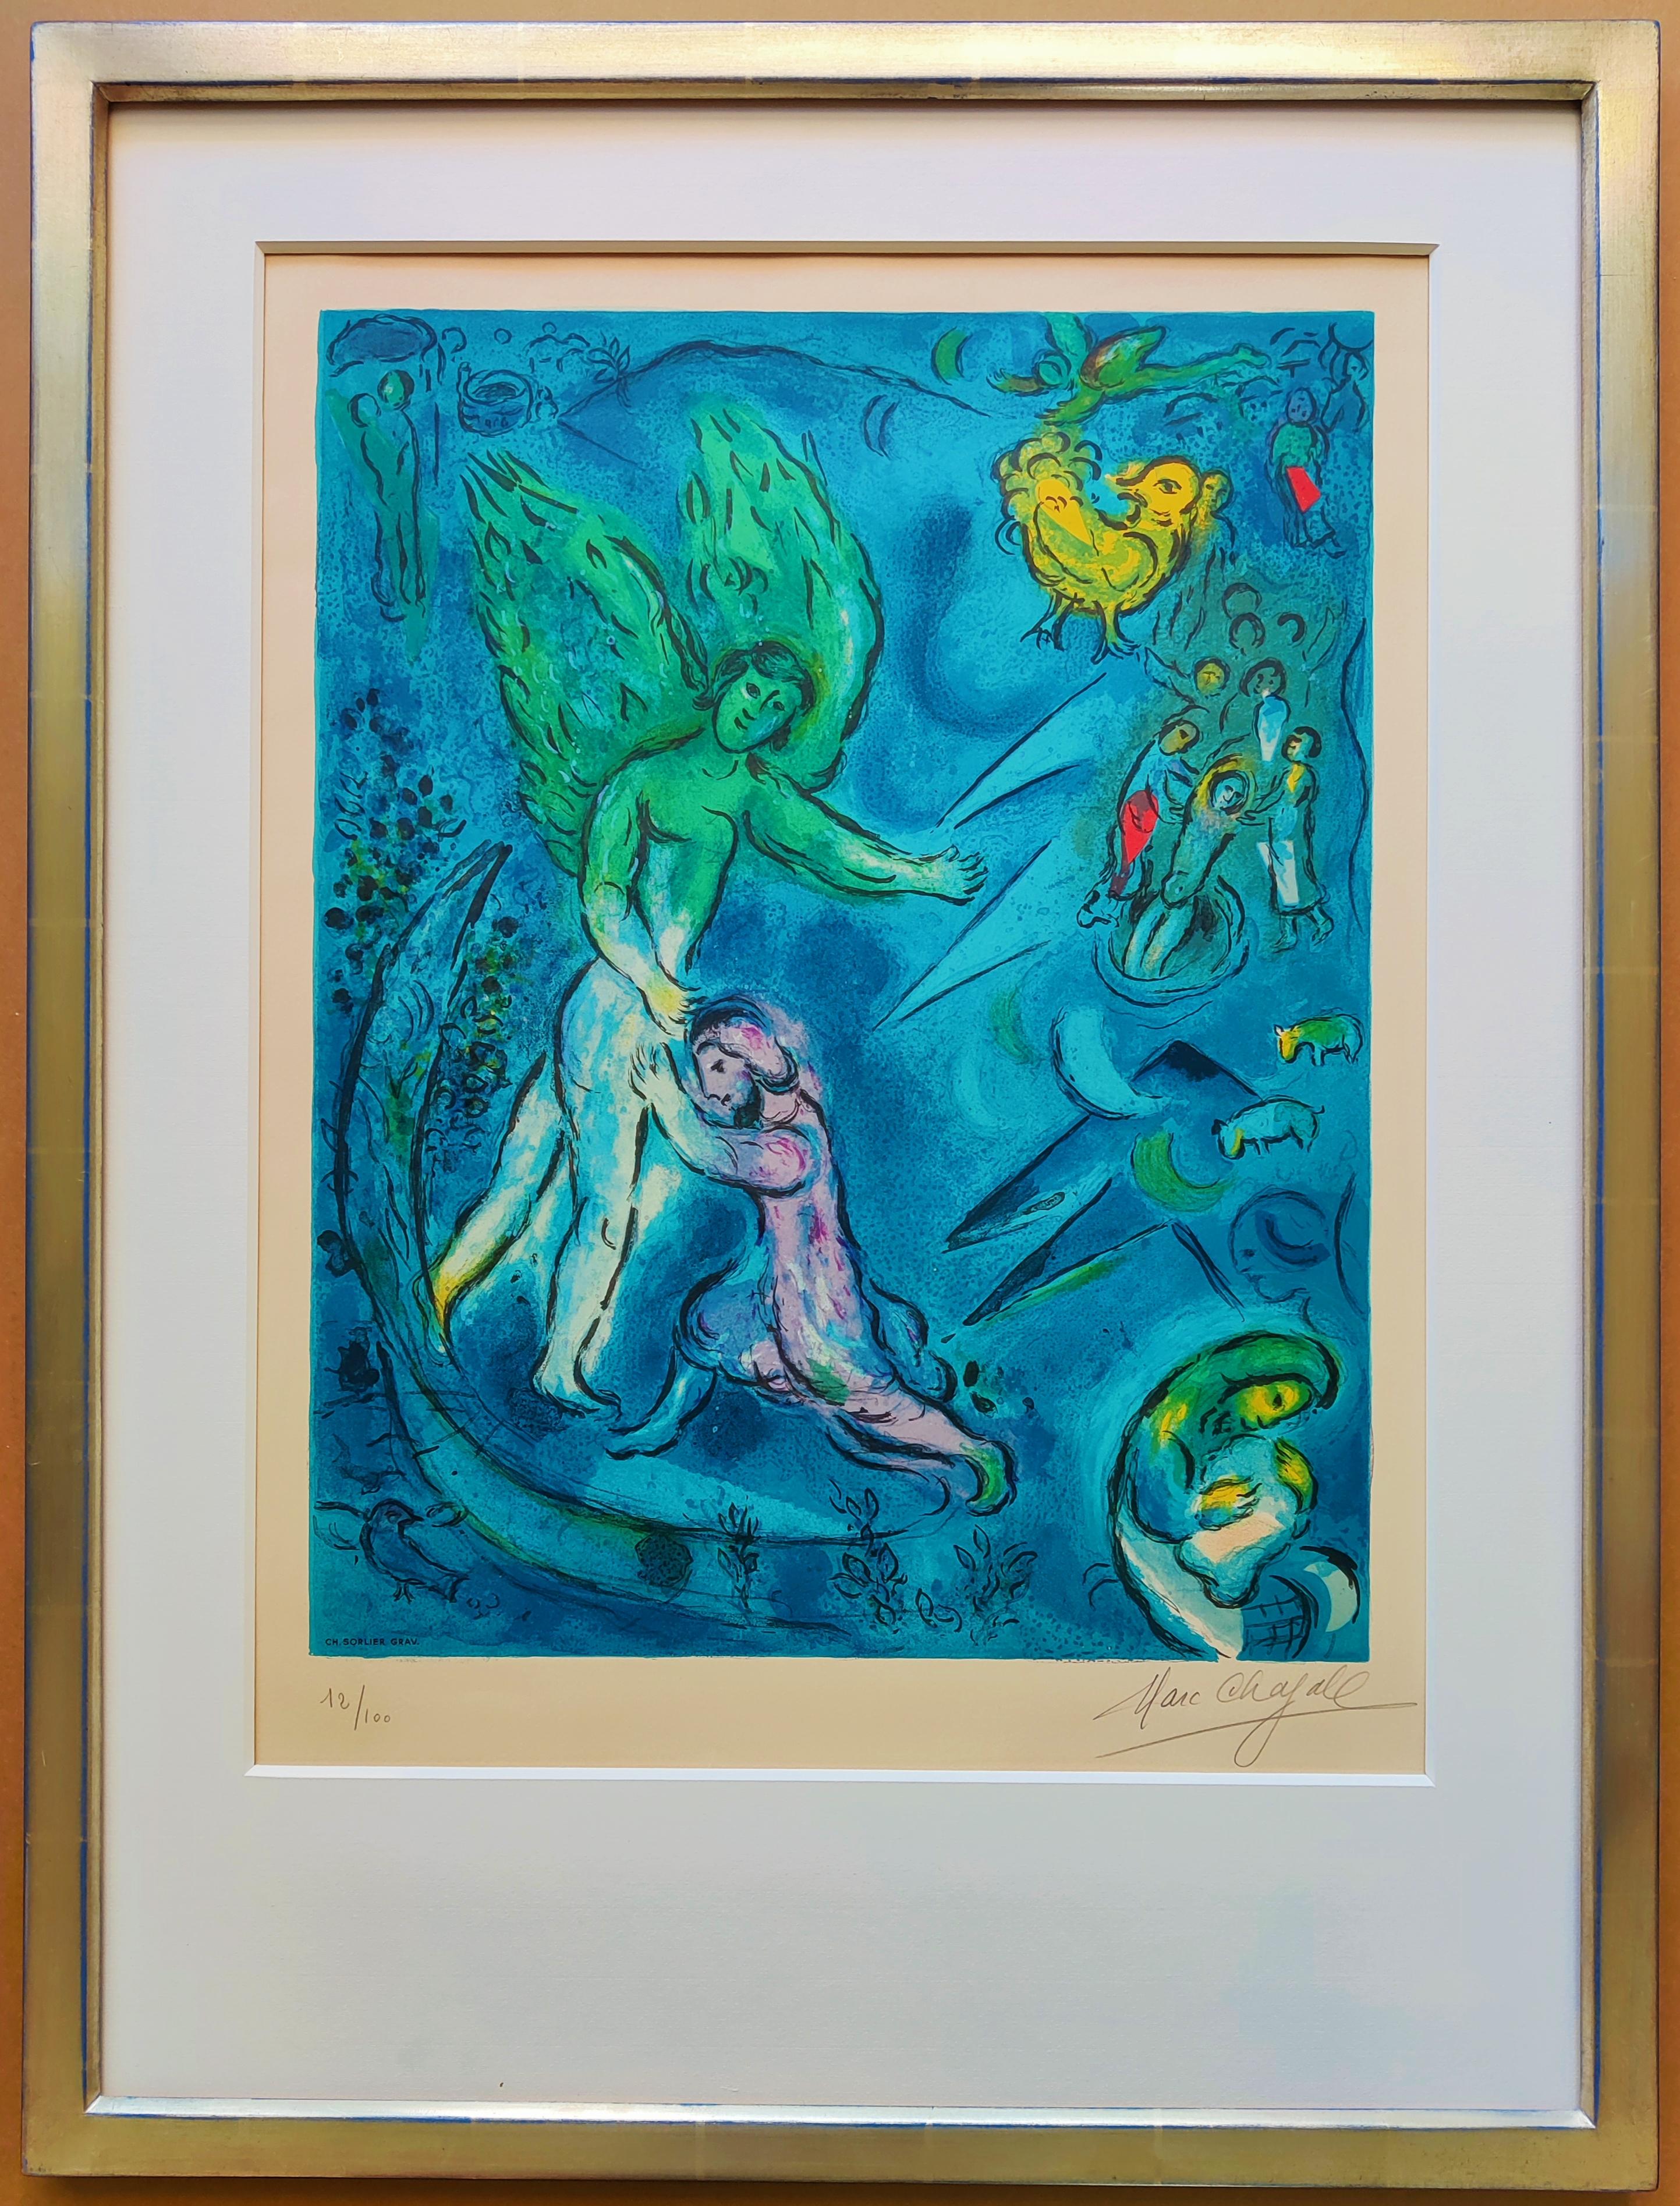 La lutte du Jacob et du l'Ange (The Fight Between Jacob & the Angel) - Print by Marc Chagall